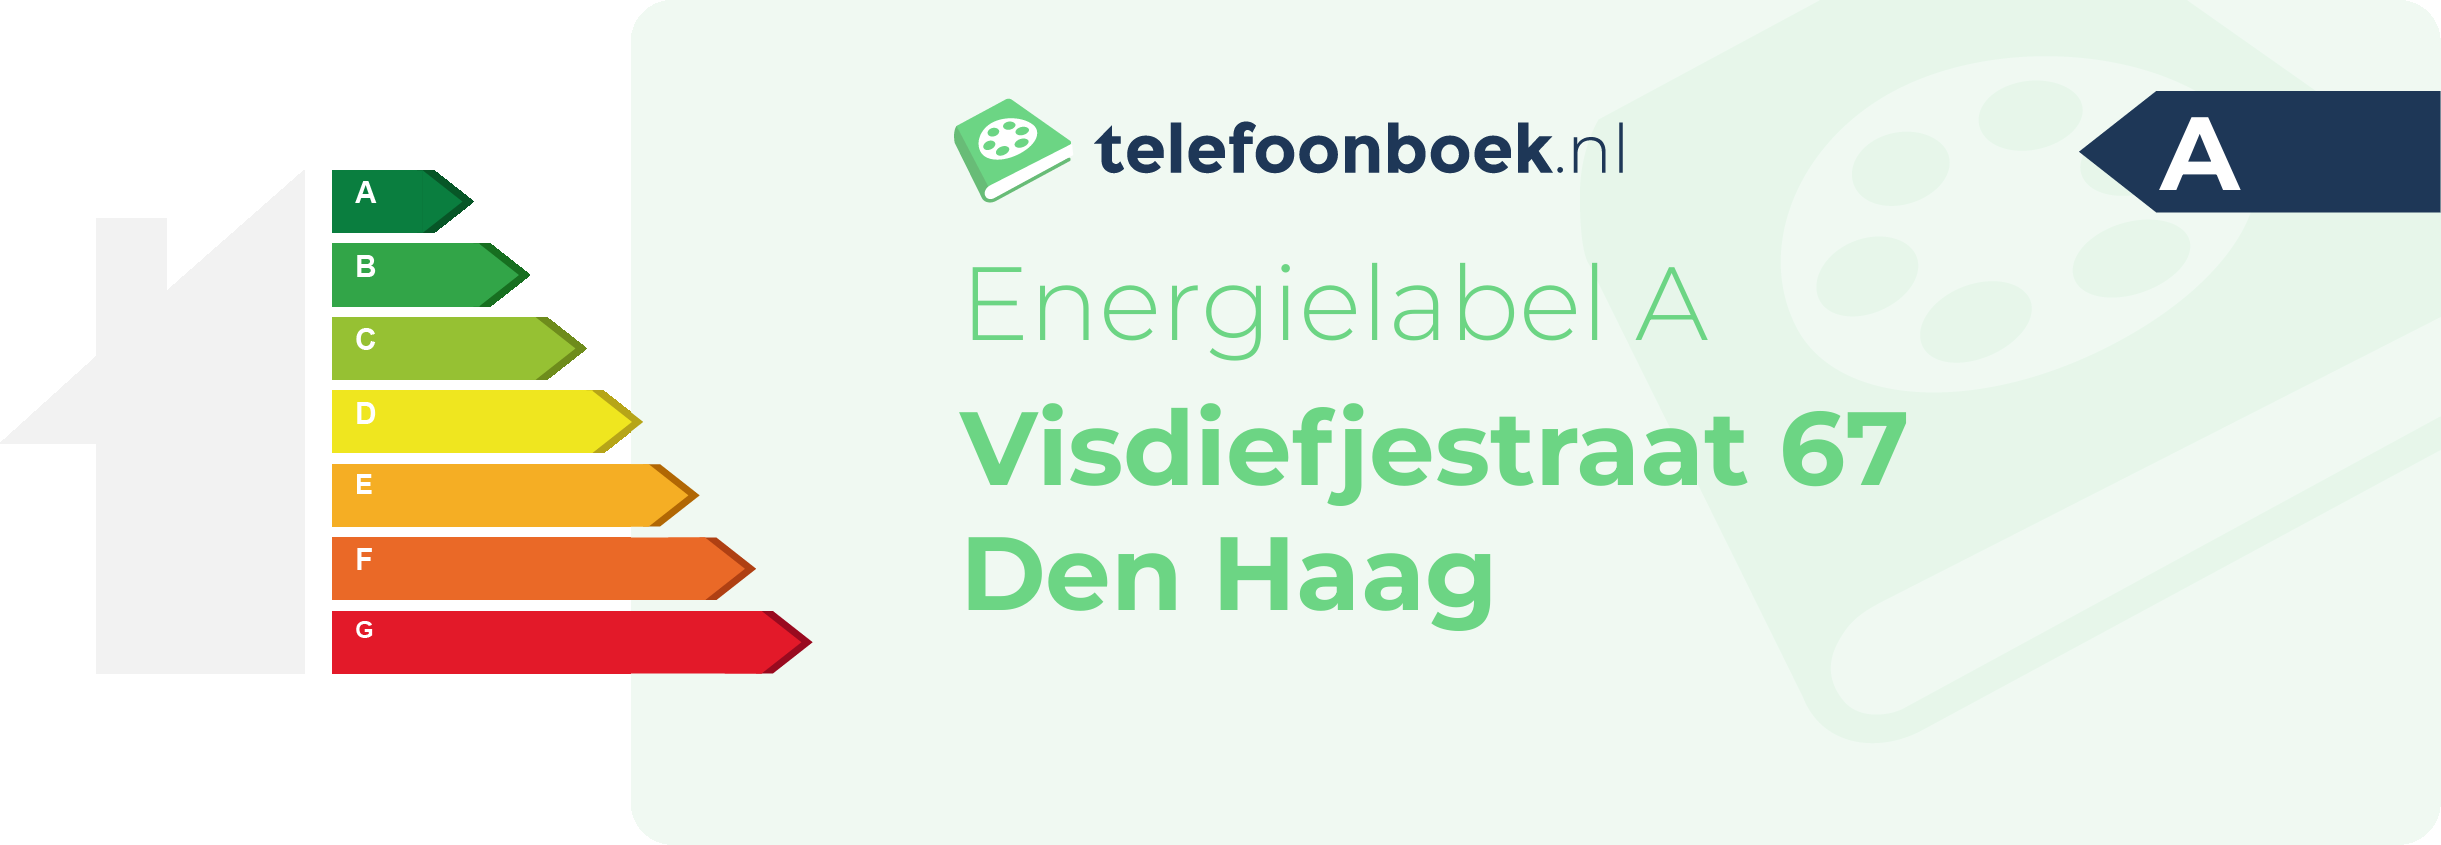 Energielabel Visdiefjestraat 67 Den Haag